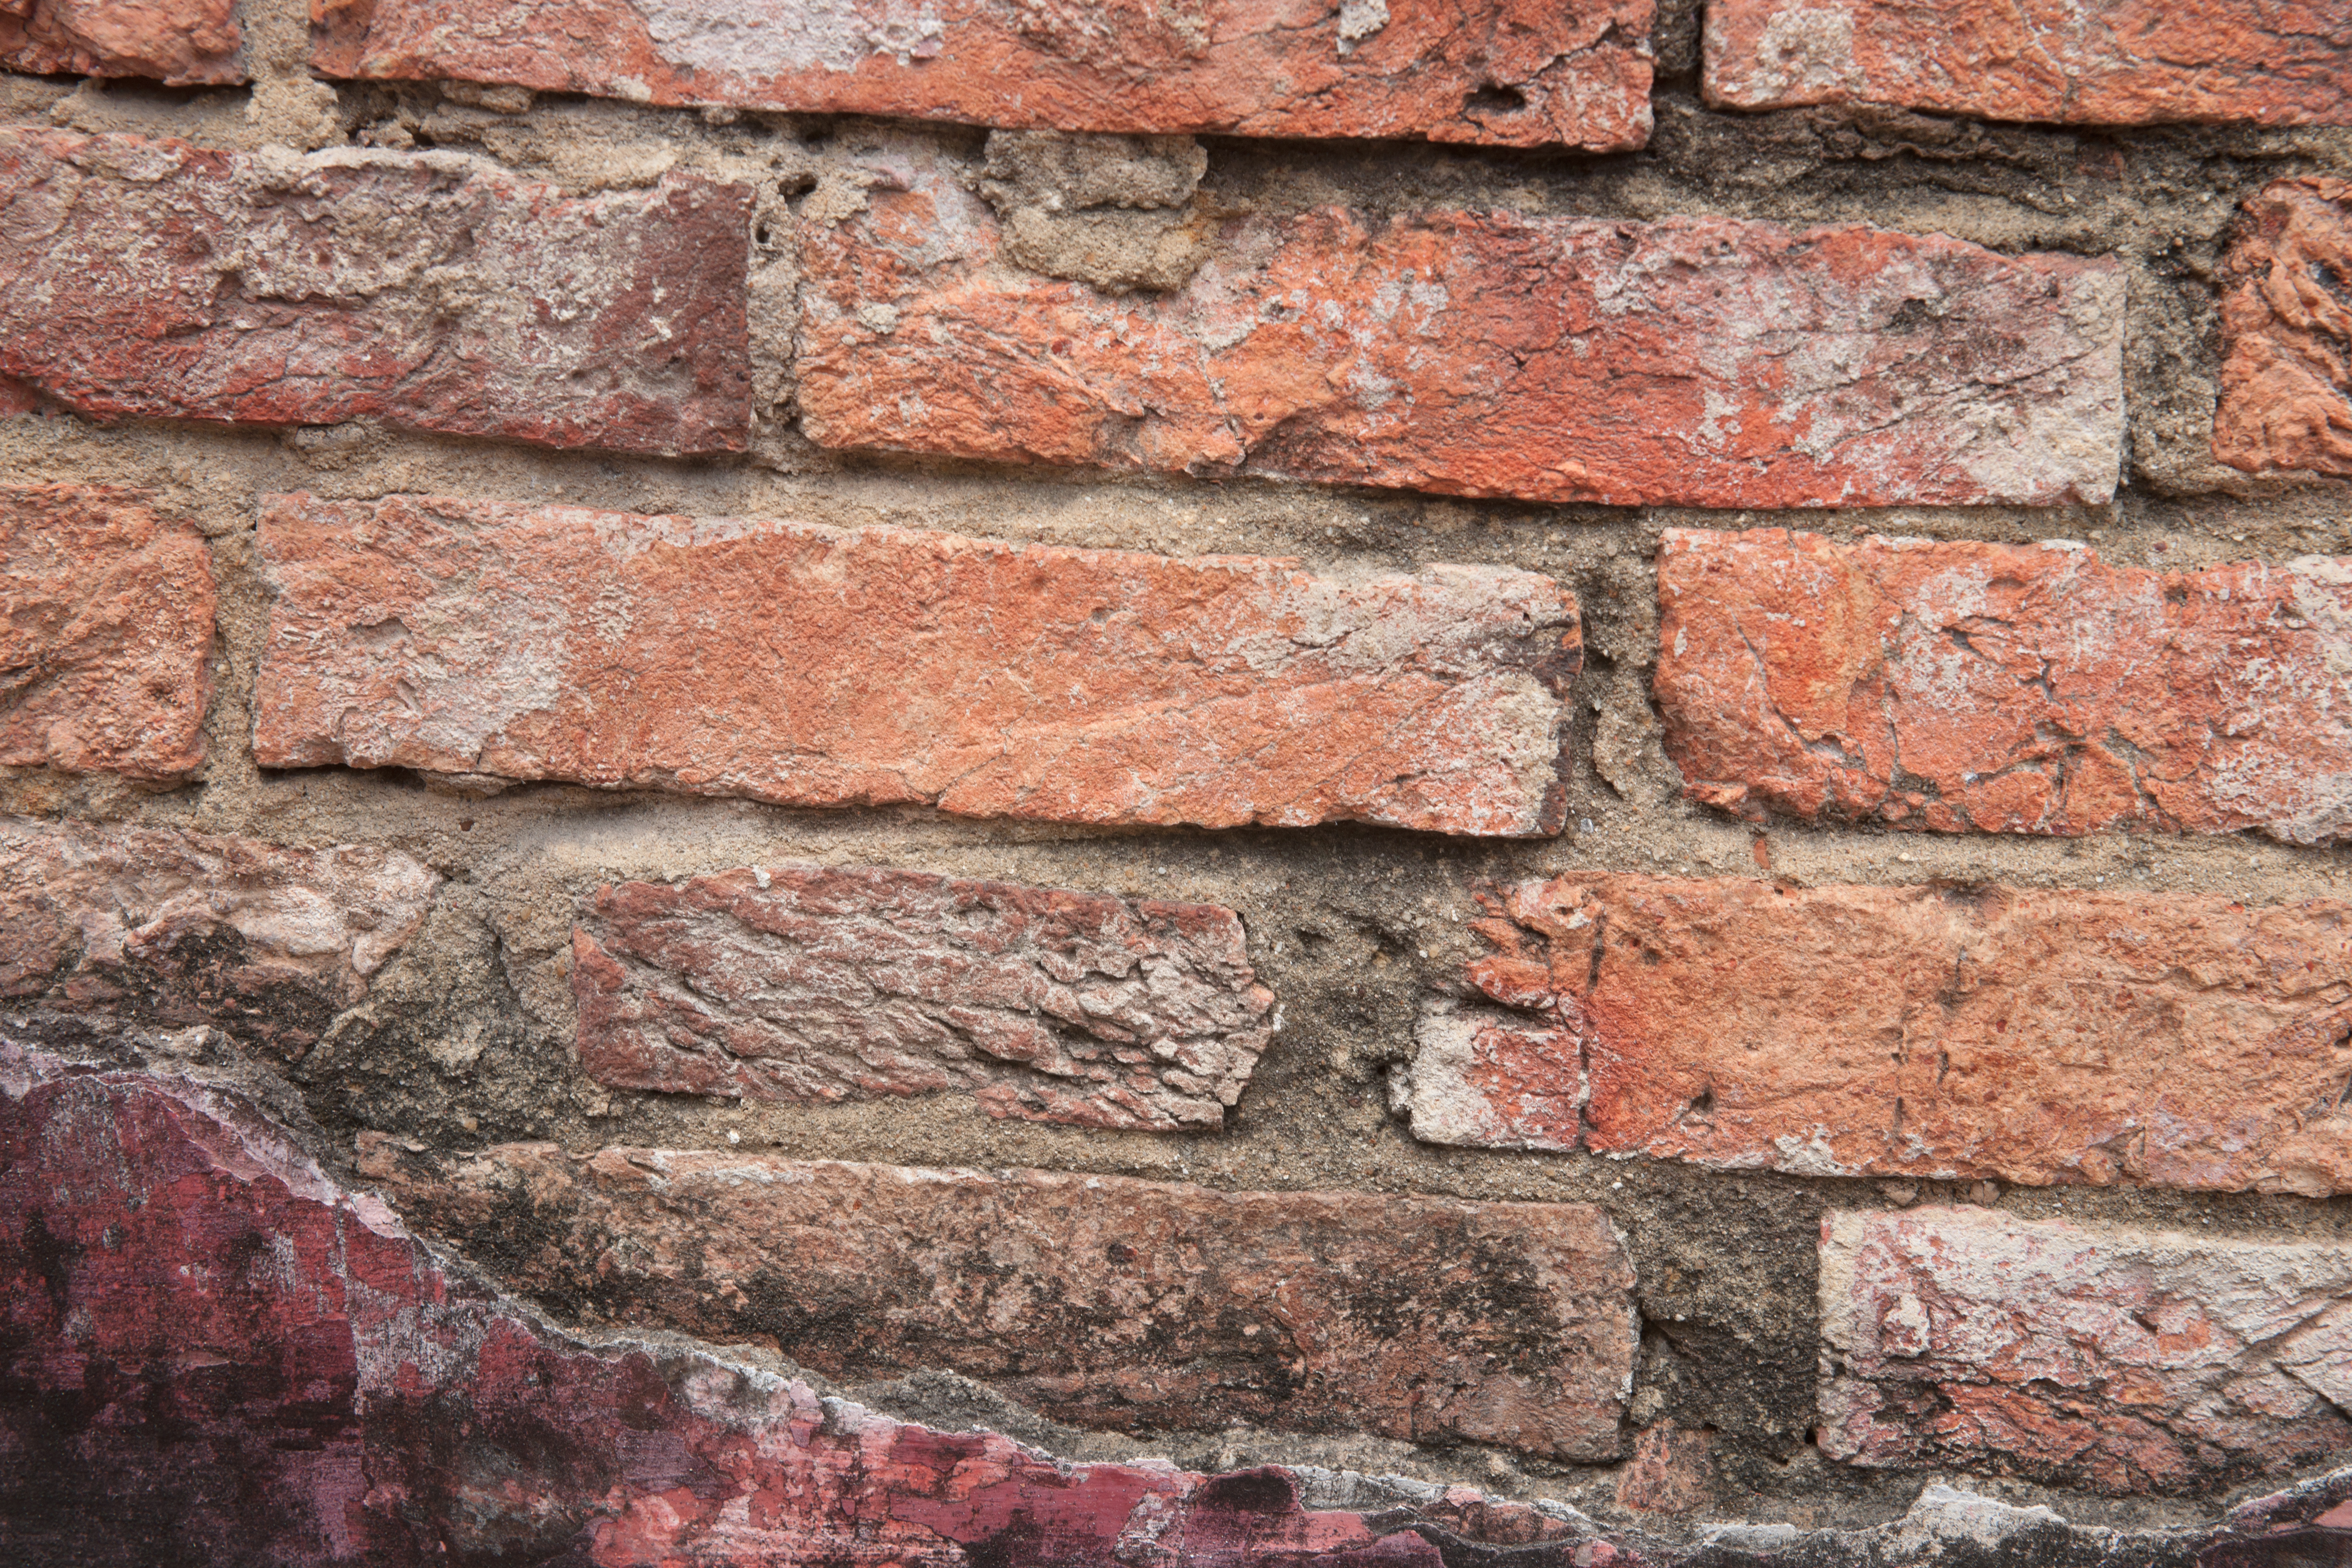 rough brick wall texture